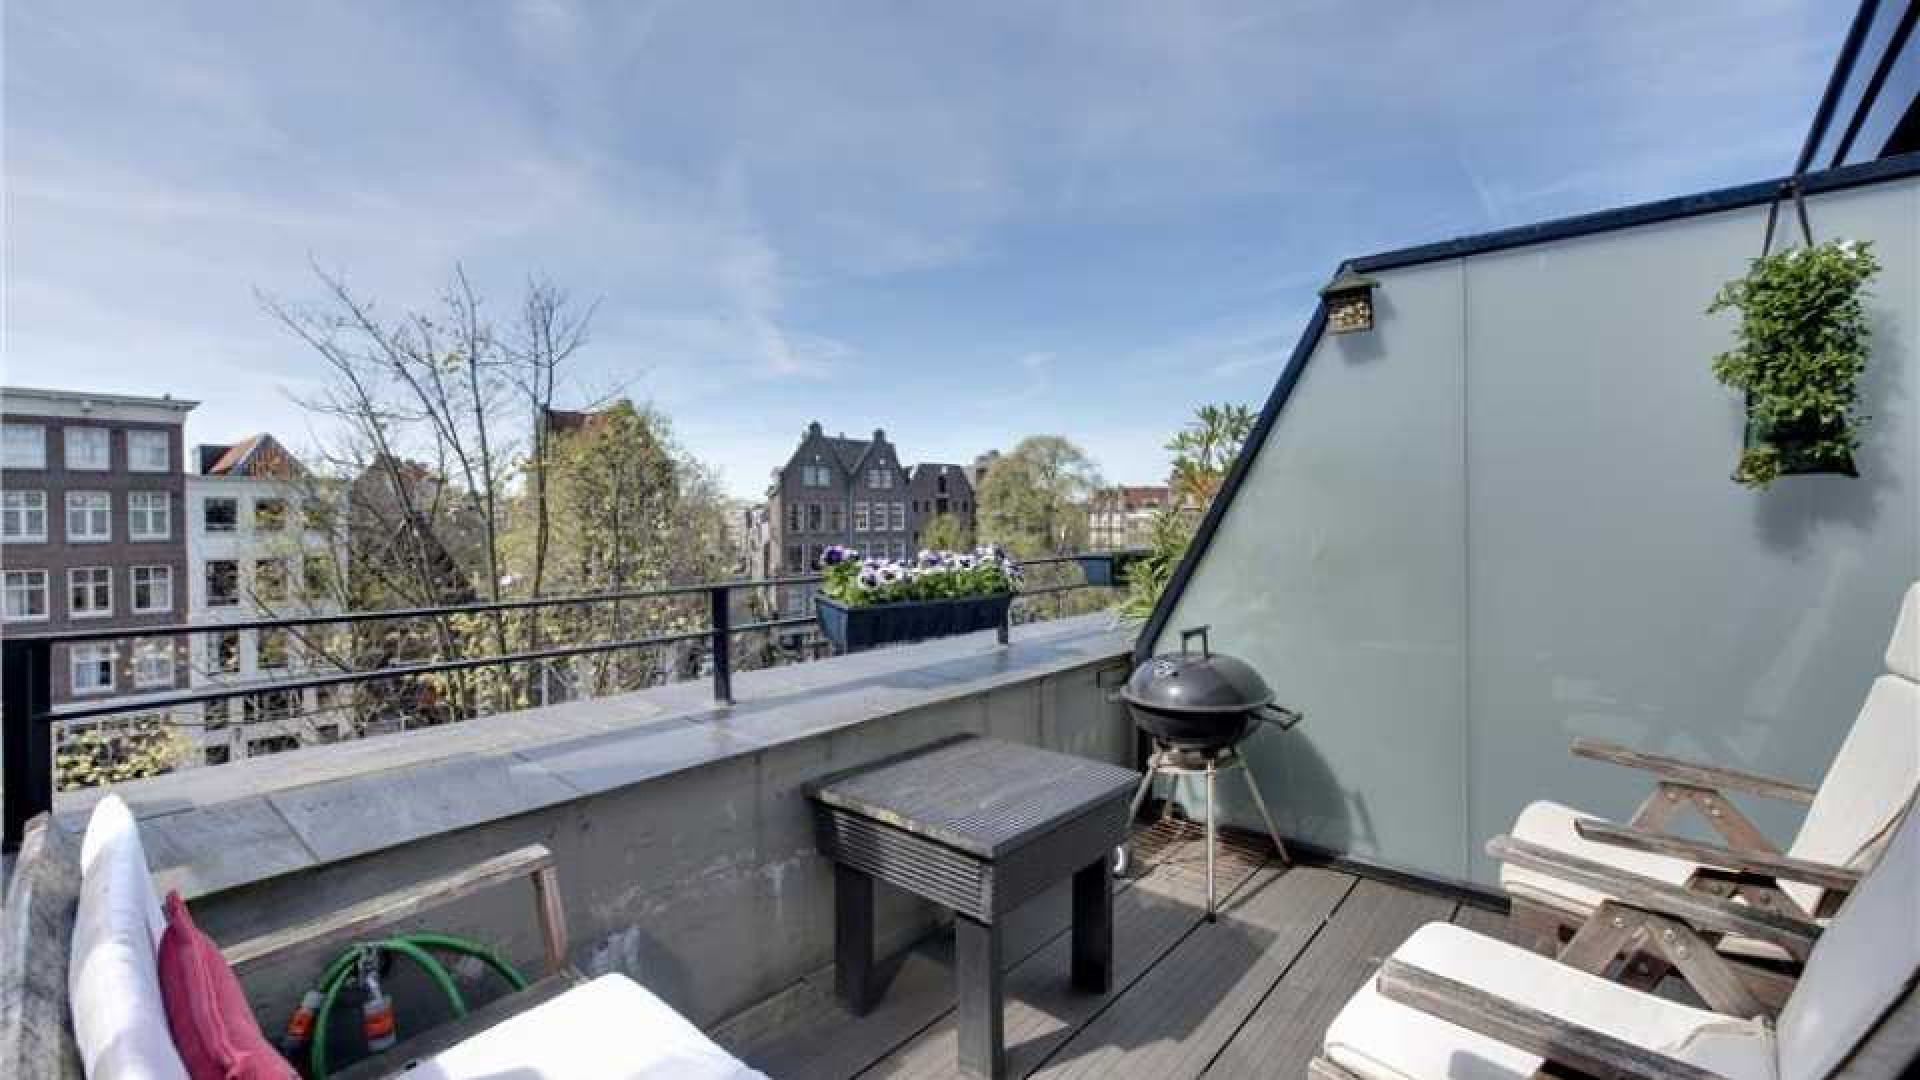 Radio 538  DJ Sander Lantinga zet zijn knusse Amsterdamse appartement te koop. Zie foto's 2